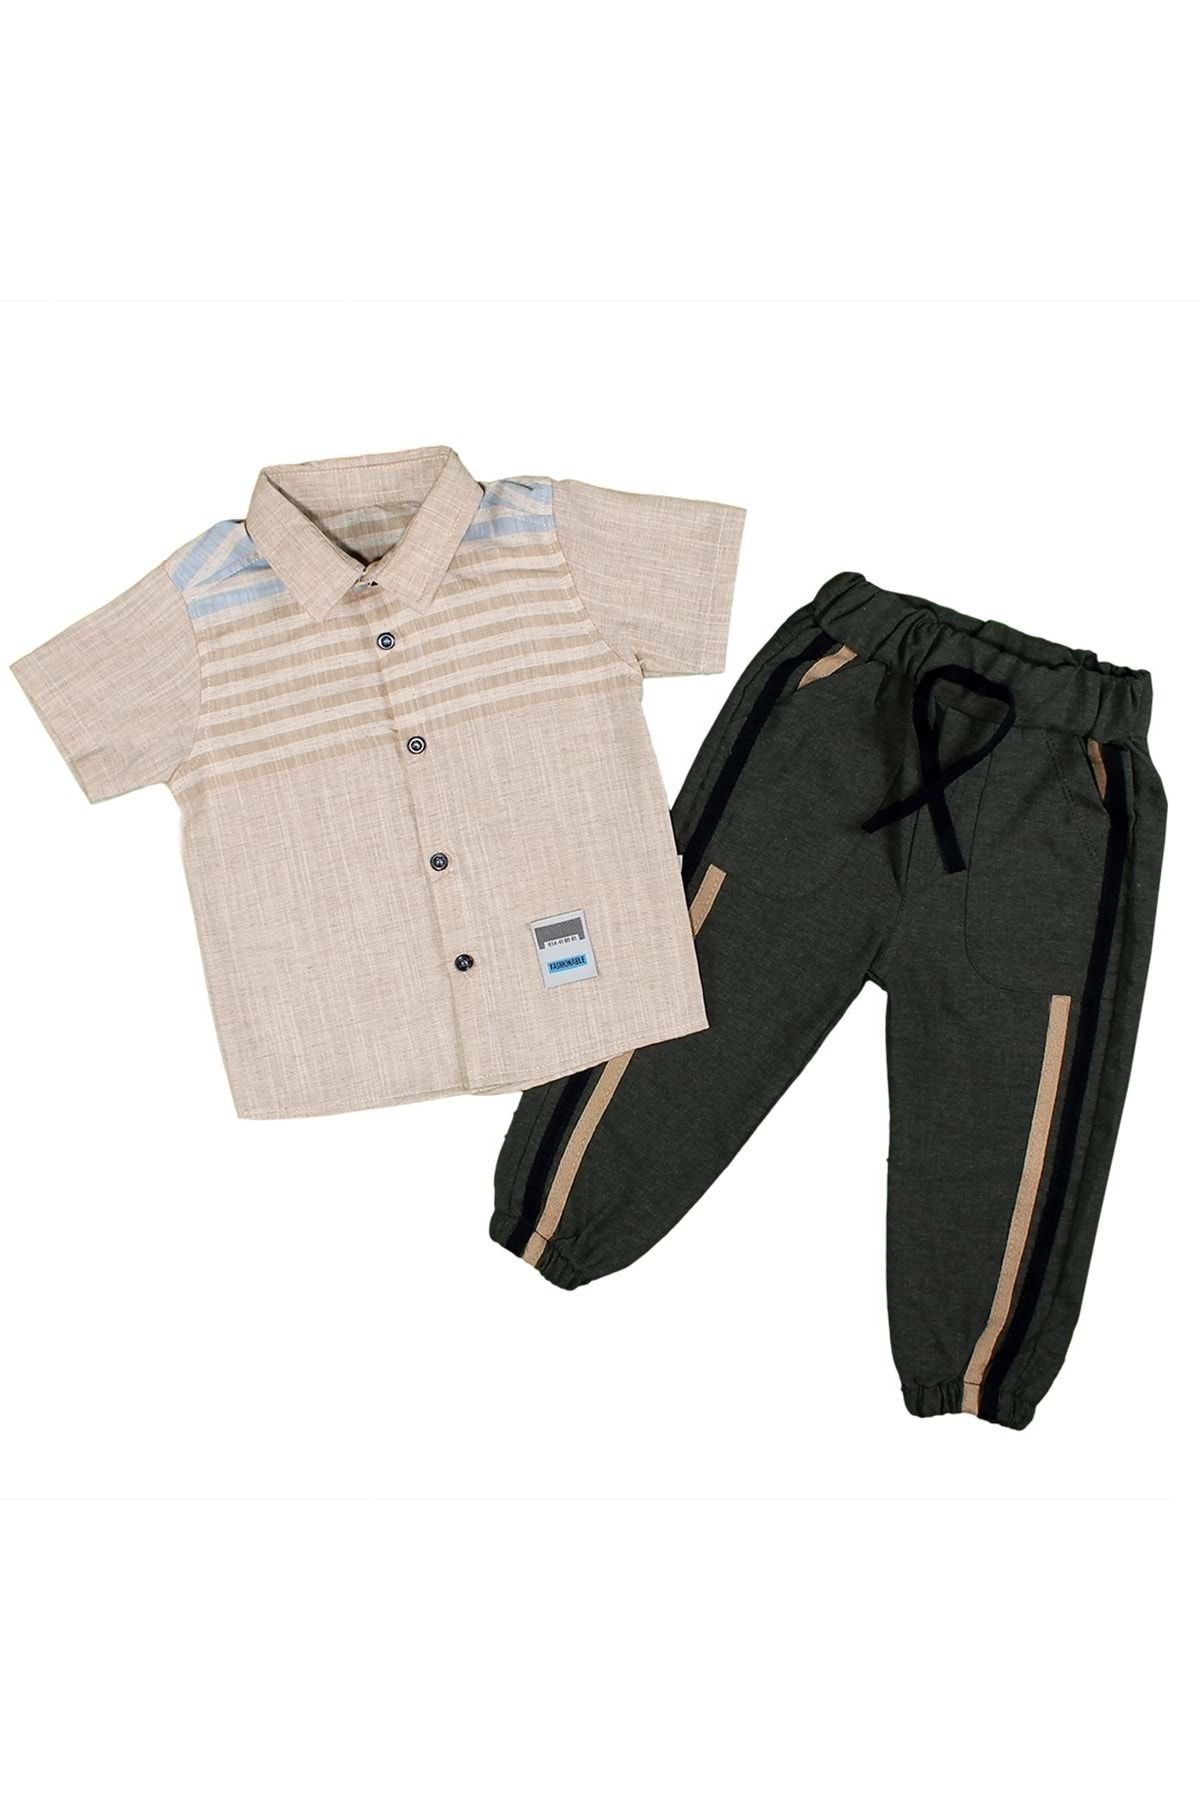 babyboy Erkek Çocuk Takım Kısakol Gömlek Şeritli Pantolon 1-4 Yaş